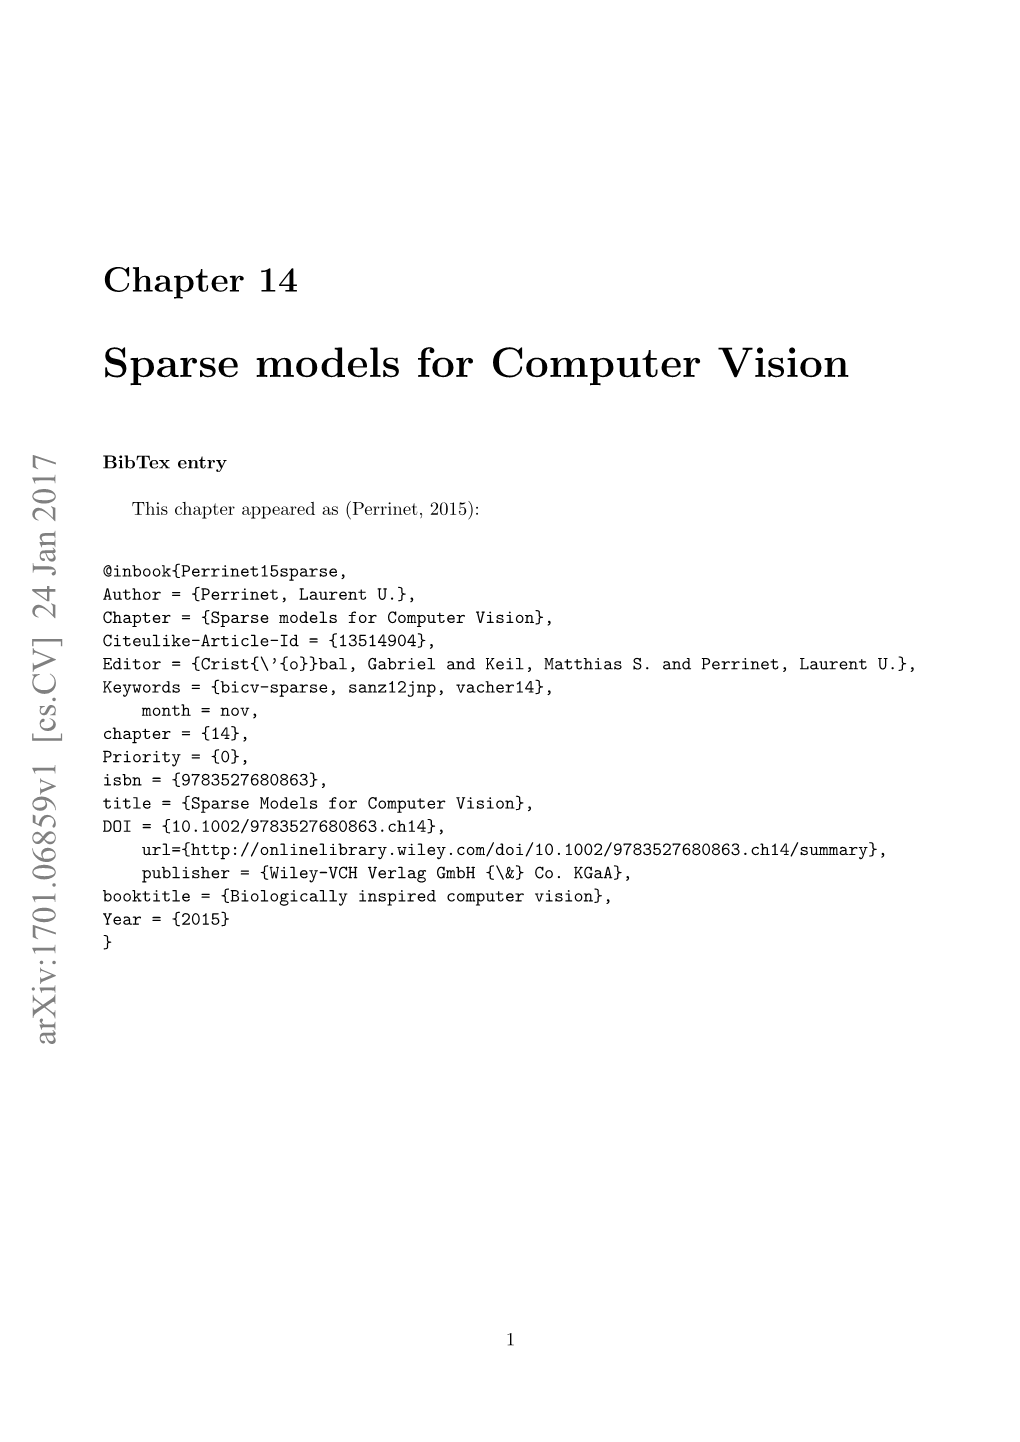 Sparse Models for Computer Vision